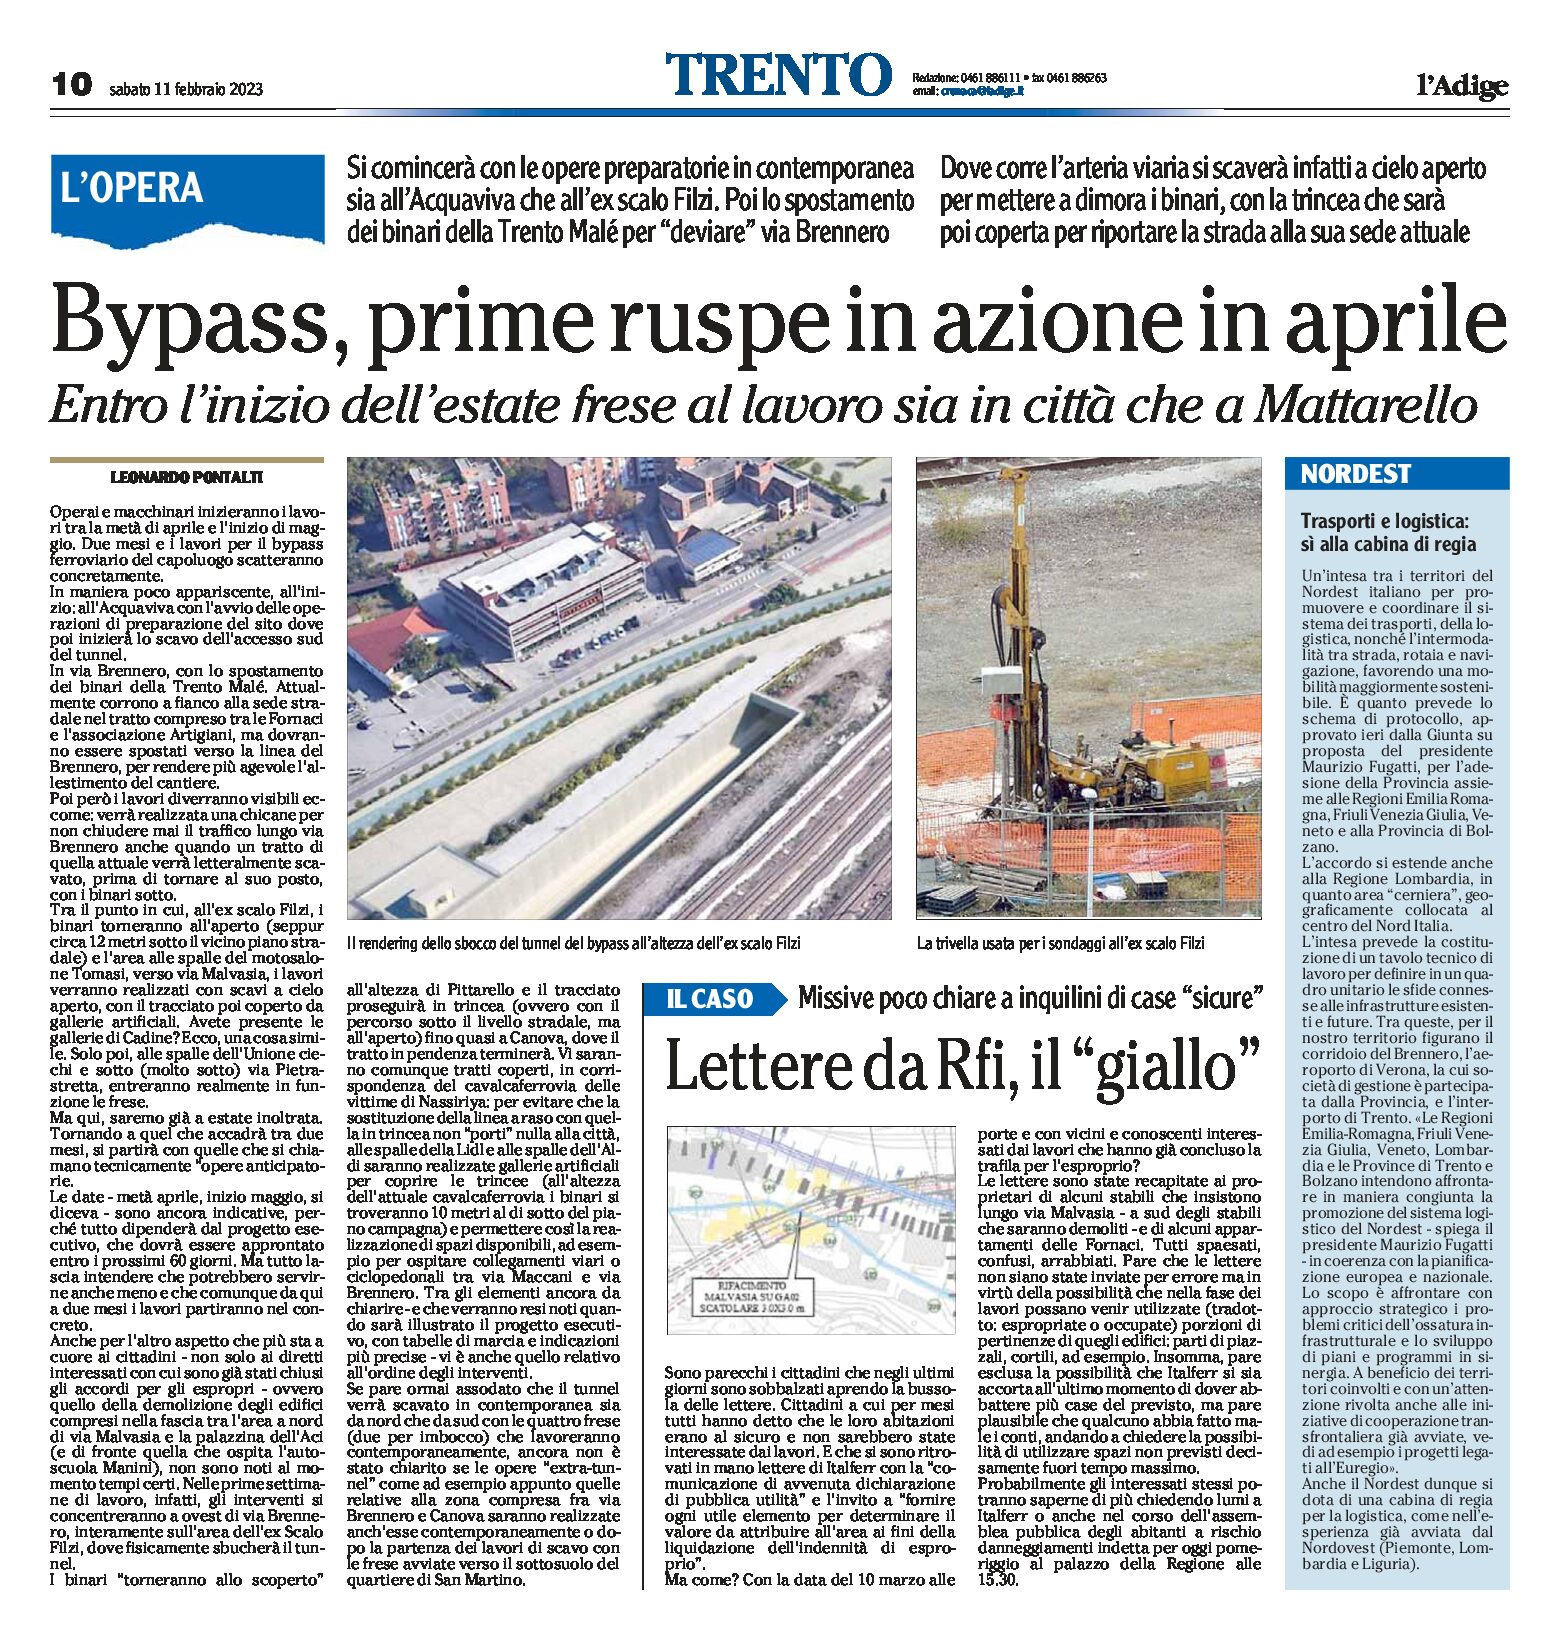 Trento, bypass: prime ruspe in azione in aprile